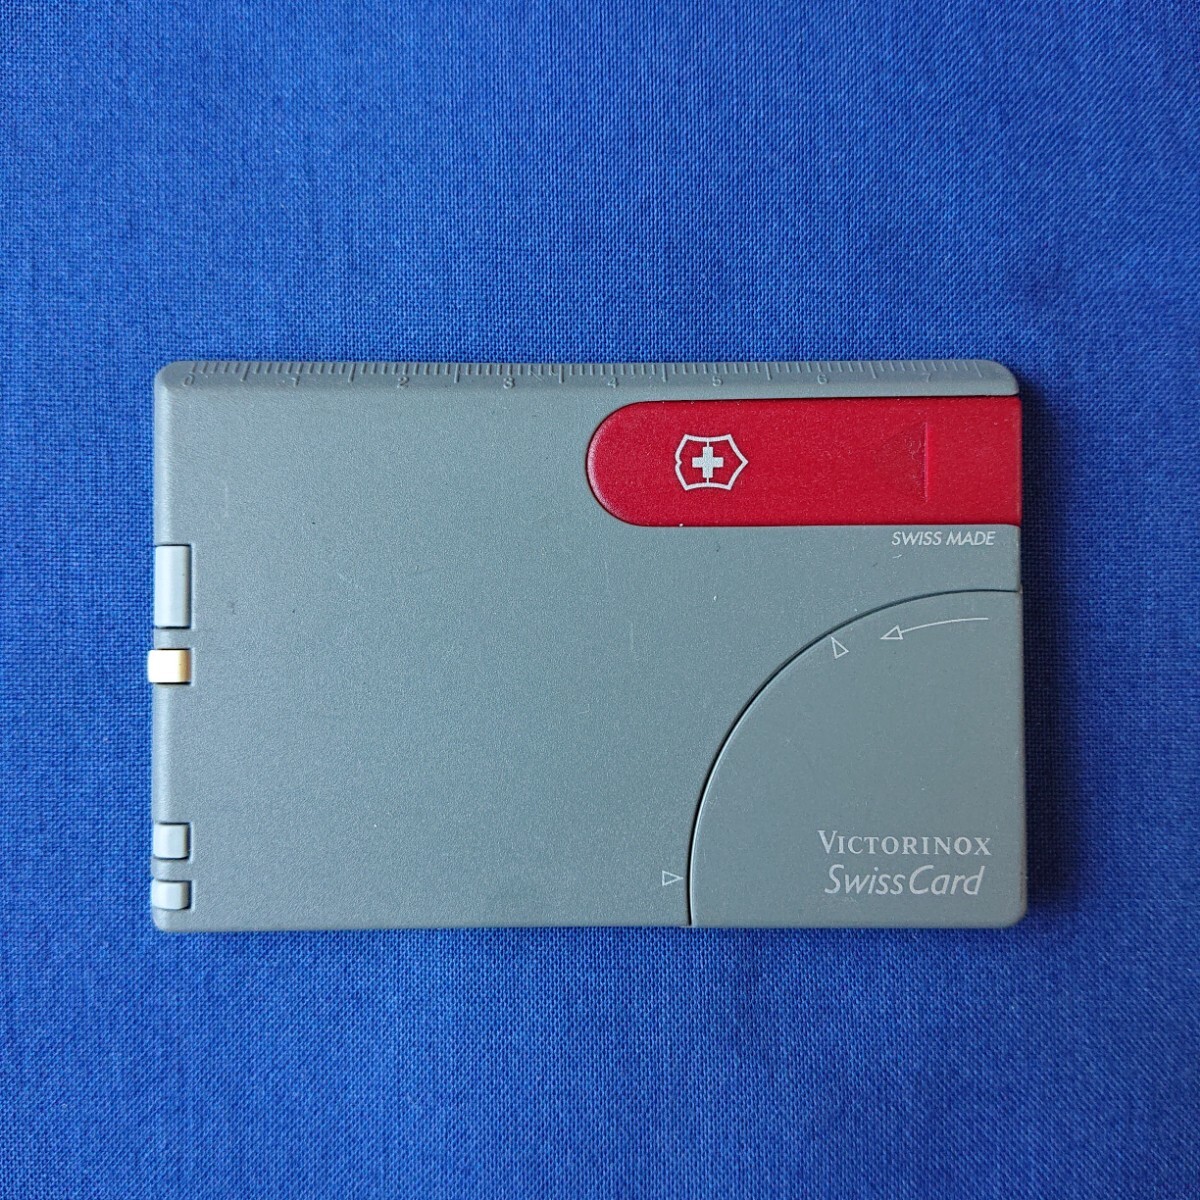 VICTORINOX(ビクトリノックス)Swiss Card (01)の画像1